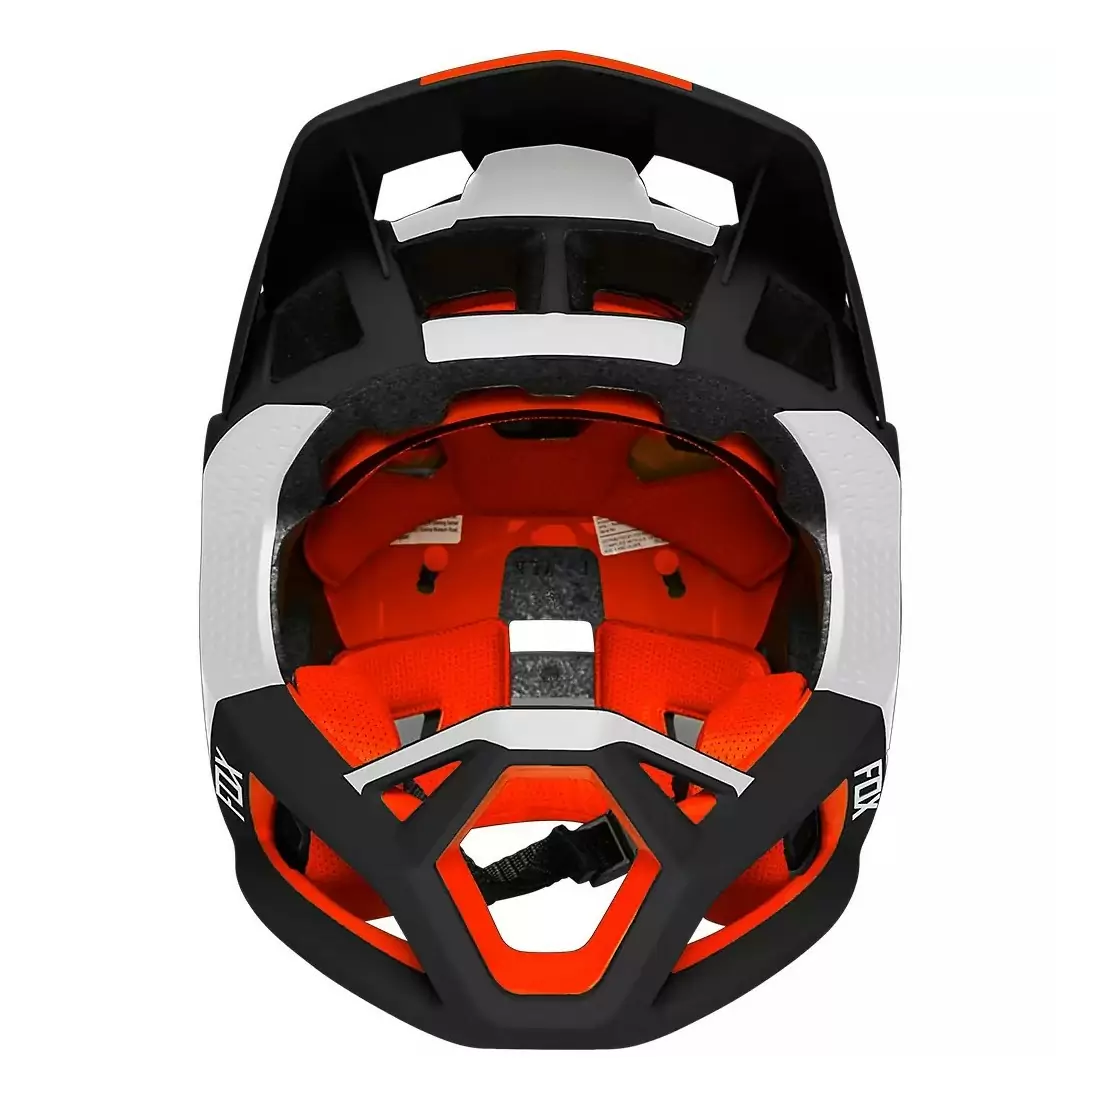 Proframe MTB Fullface Helmet Blocked Black/White Size S (52-56cm) #3